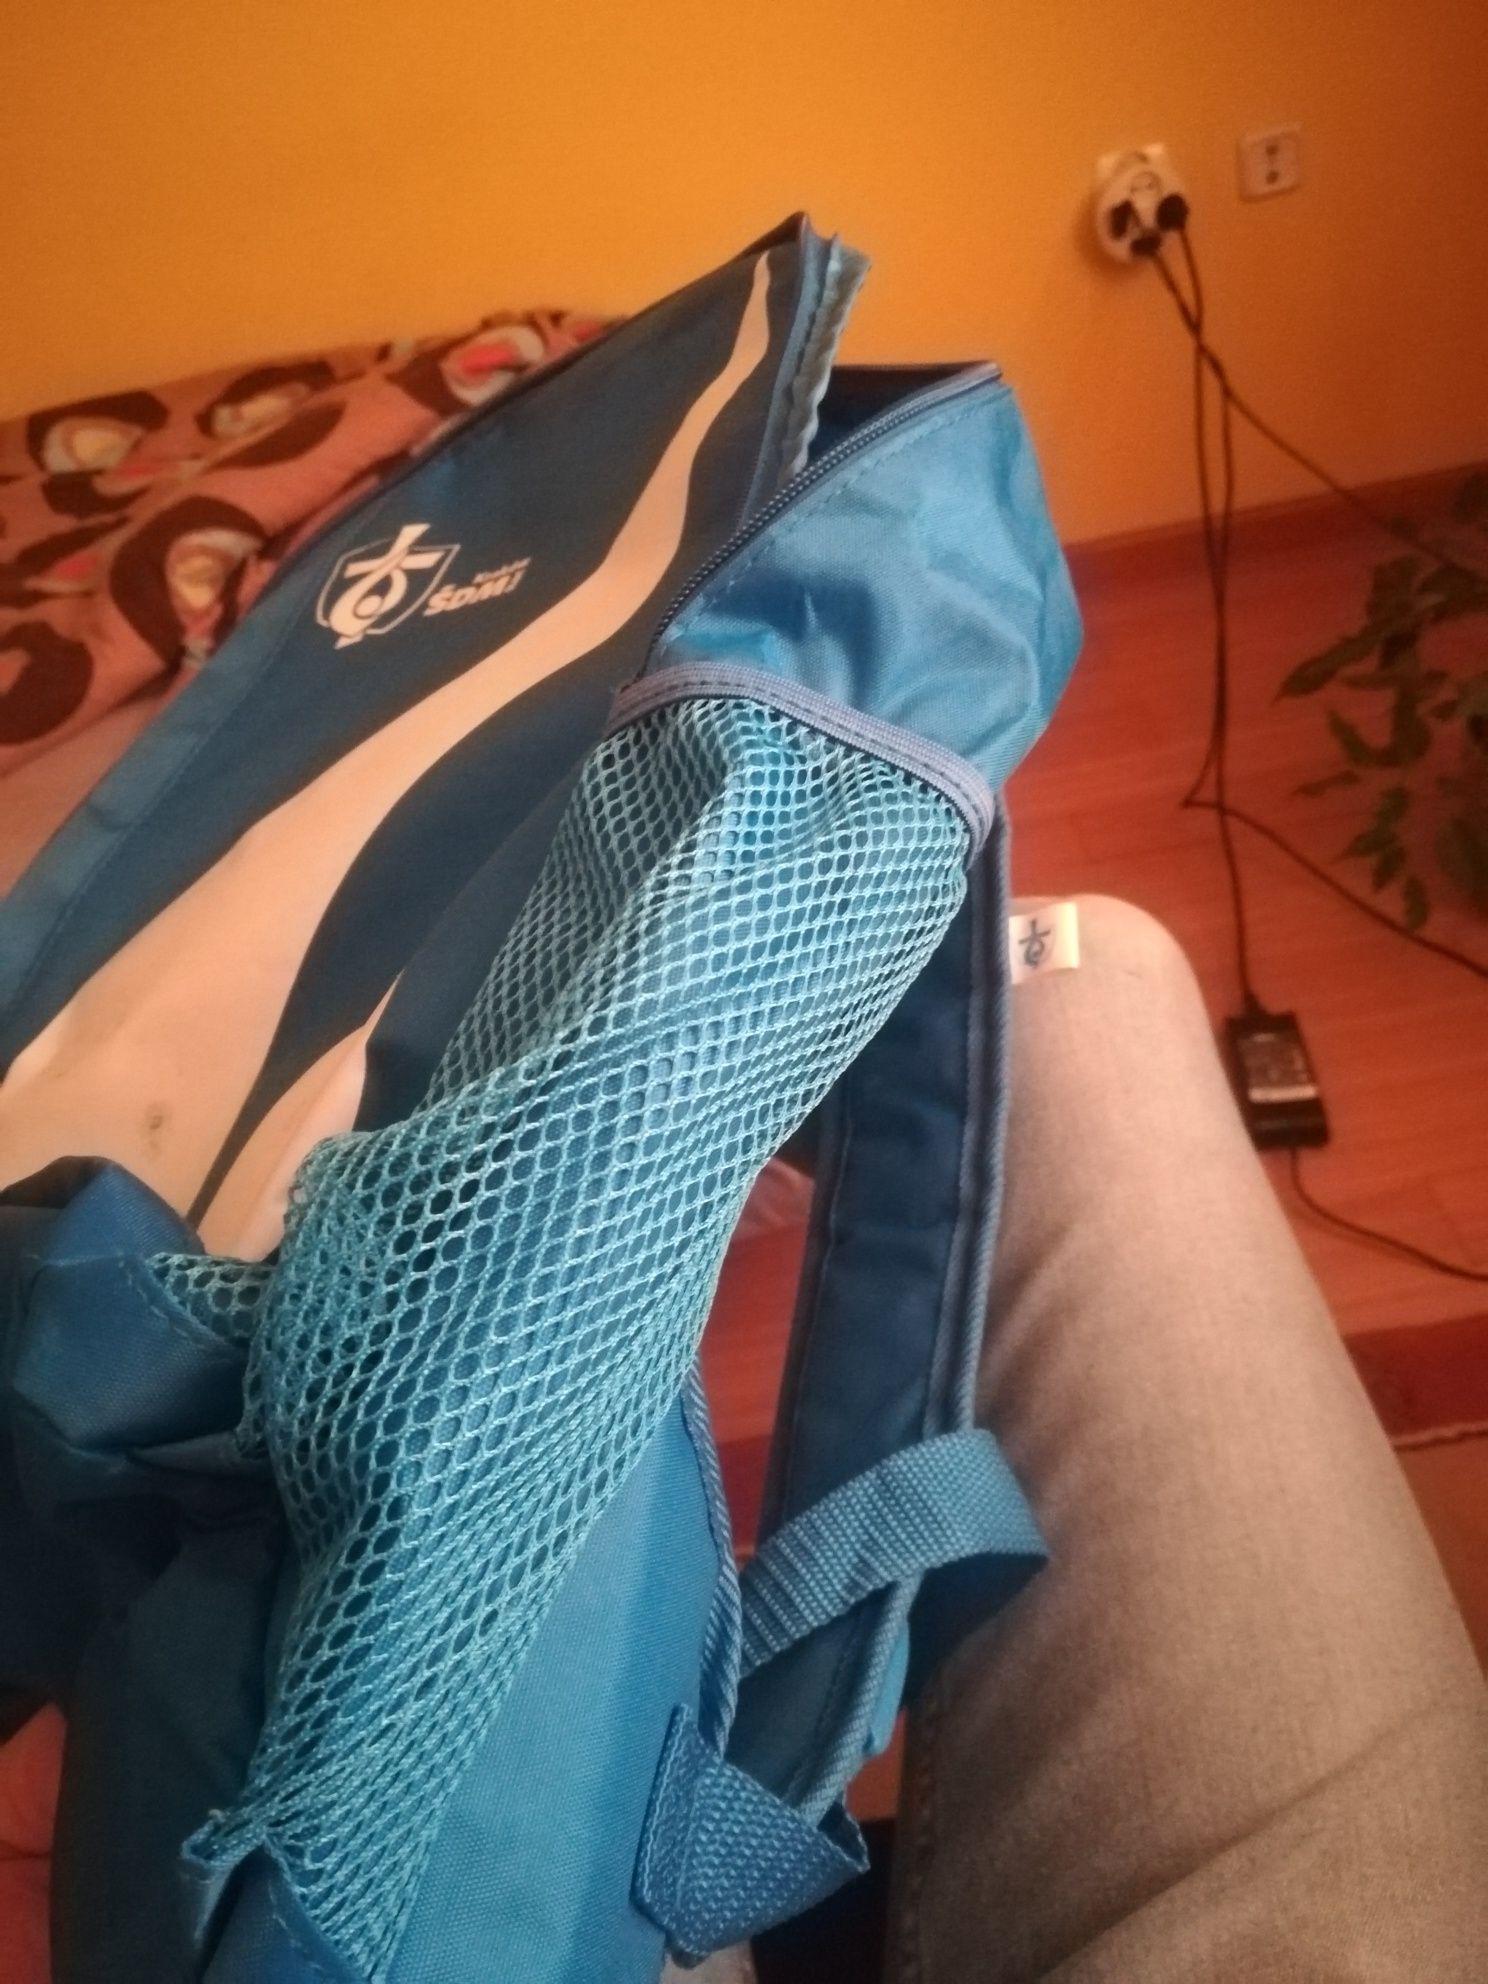 Plecak ŚDM 2016 niebieski